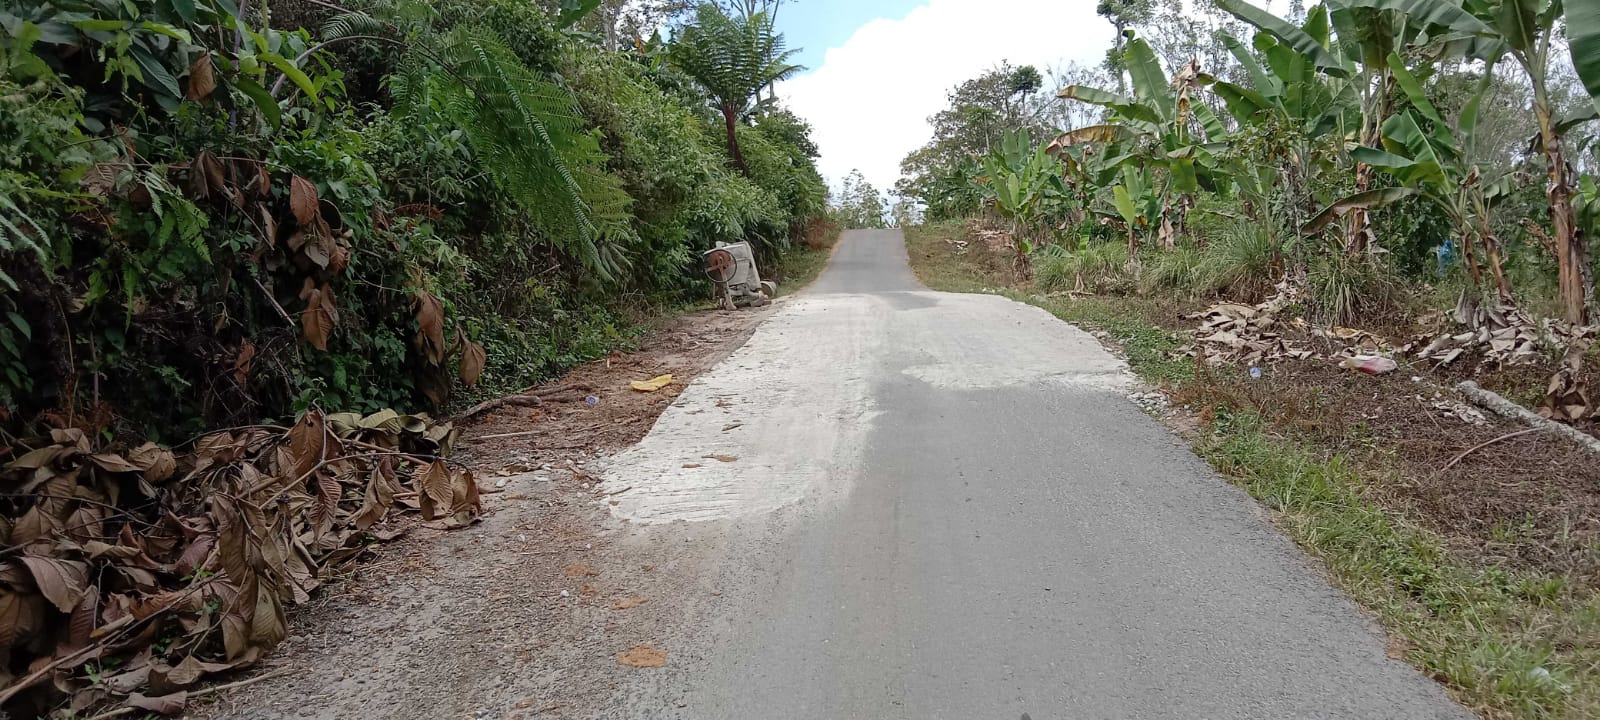 Rasa Memiliki, Pekon Pagar Dewa Tambal Jalan Poros Kecamatan Secara Swadaya